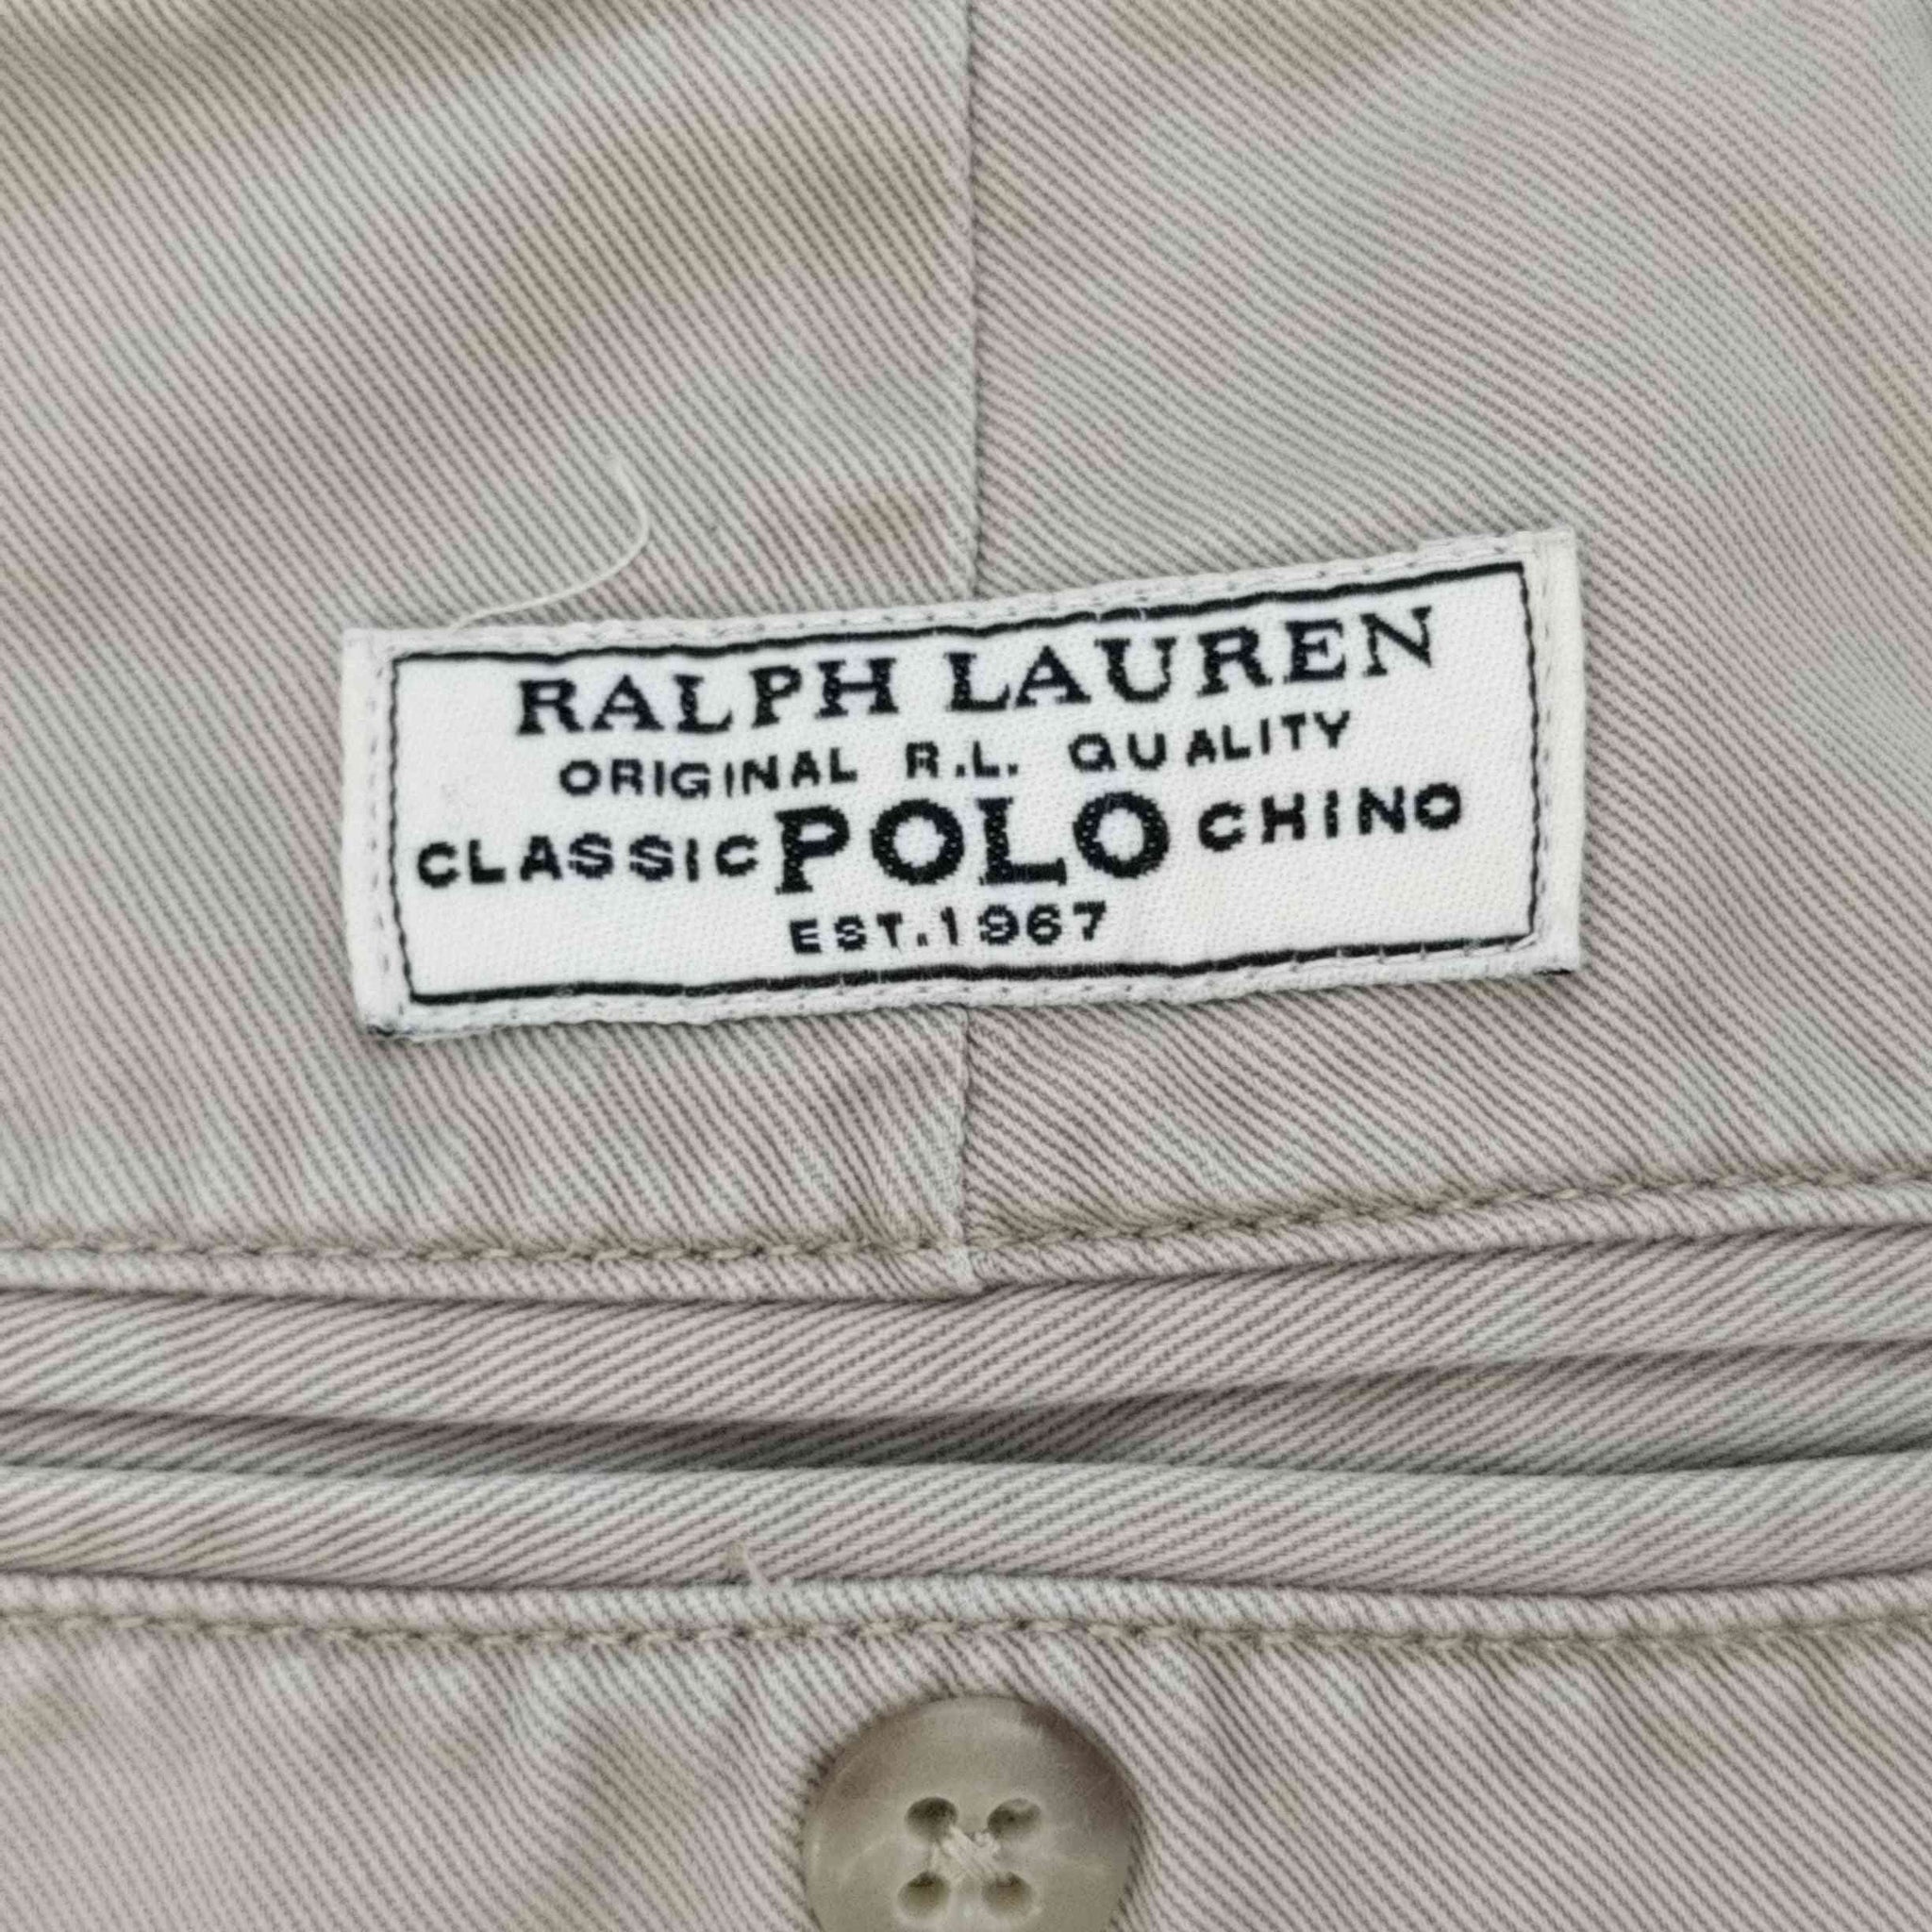 Polo by RALPH LAUREN(ポロバイラルフローレン)CLASSIC POLO CHINO ポロチノパンツ PROSPECT PANT